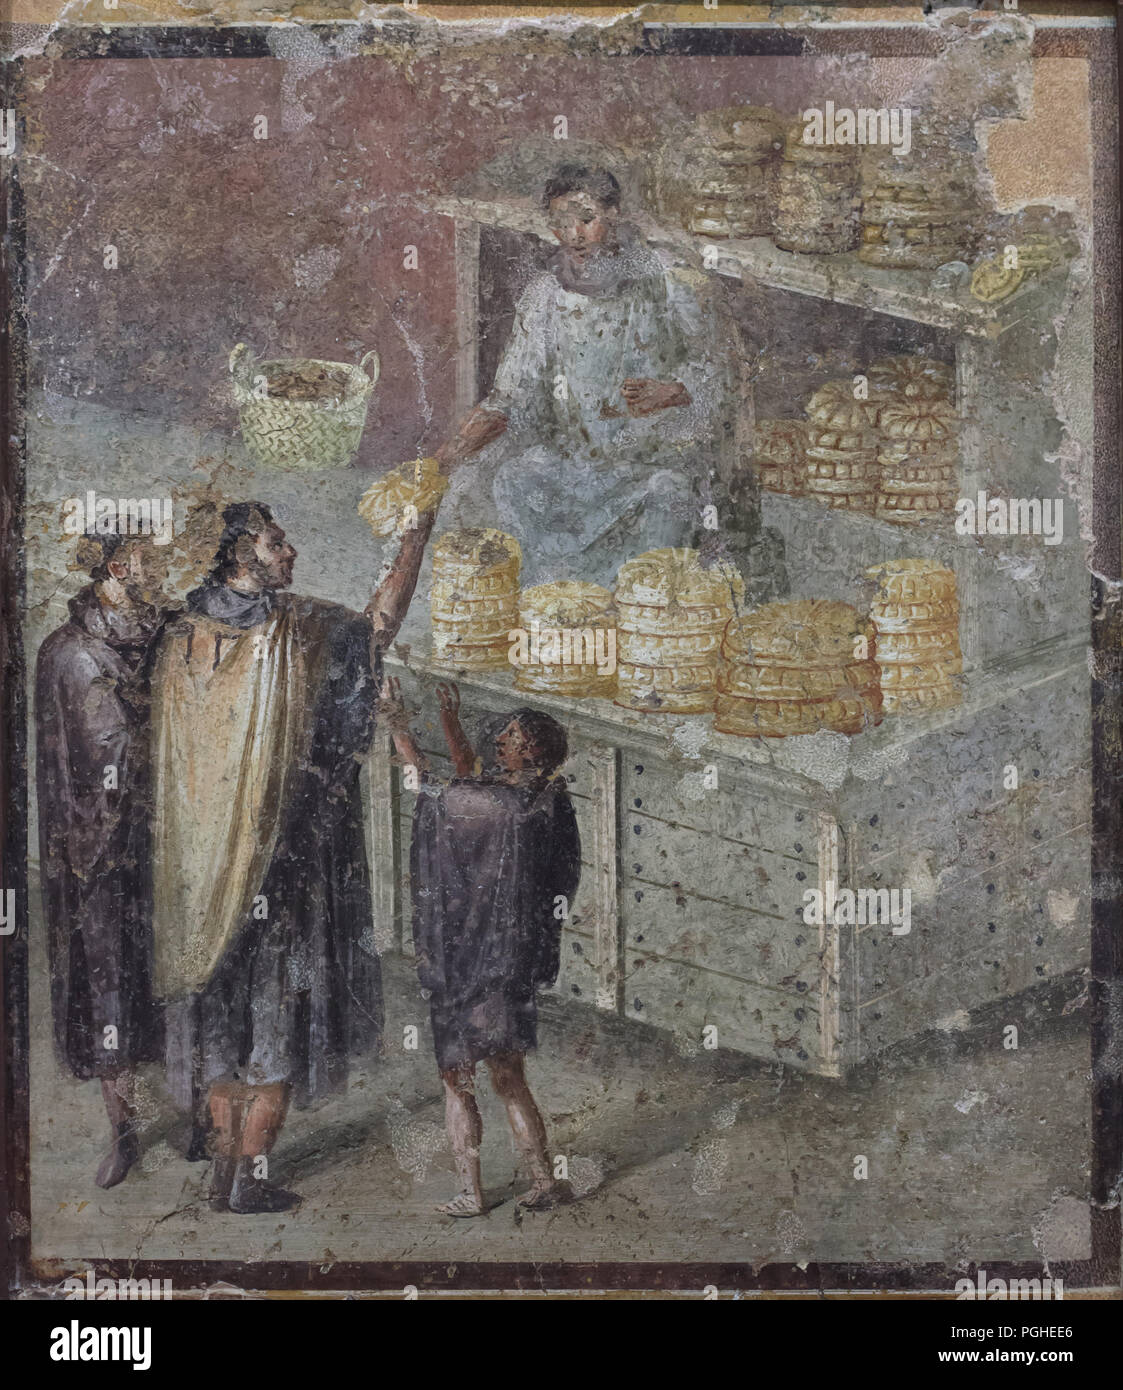 Panificio romano rappresentato in affresco Romano da Pompei, ora esposti nel Museo Archeologico Nazionale (Museo Archeologico Nazionale di Napoli) in Napoli, campania, Italy. Foto Stock